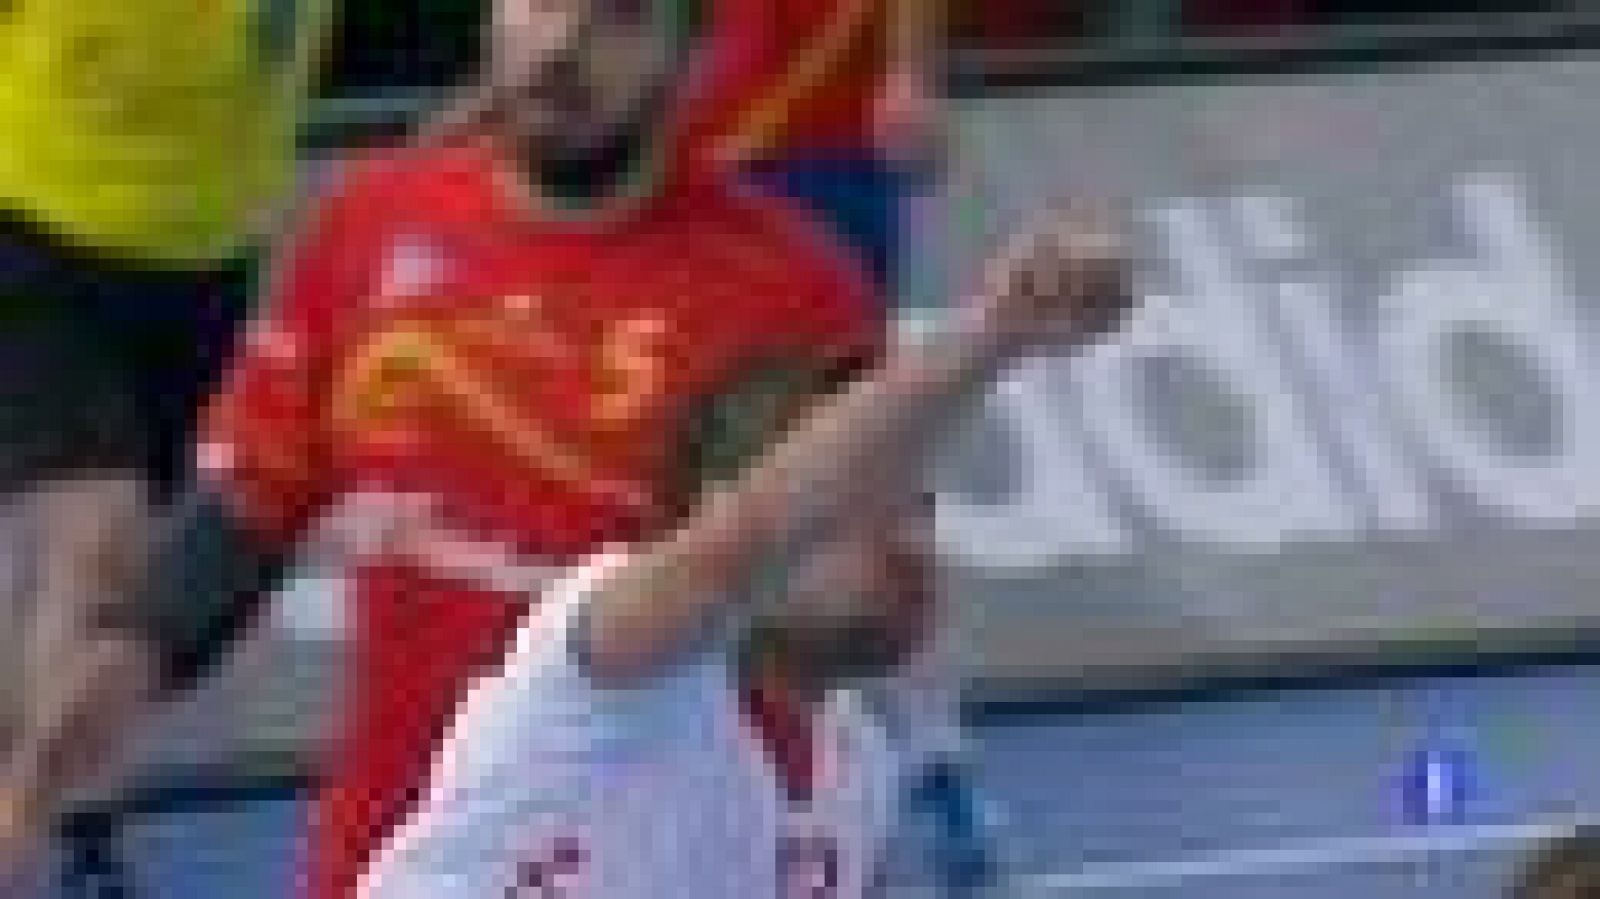 La selección española de balonmano encajó su primera derrota en el Campeonato del Mundo 2013, ante Croacia (25-27), en un encuentro en el que pagó su falta de claridad para aprovechar las superioridades numéricas. La derrota lleva a España a la segun